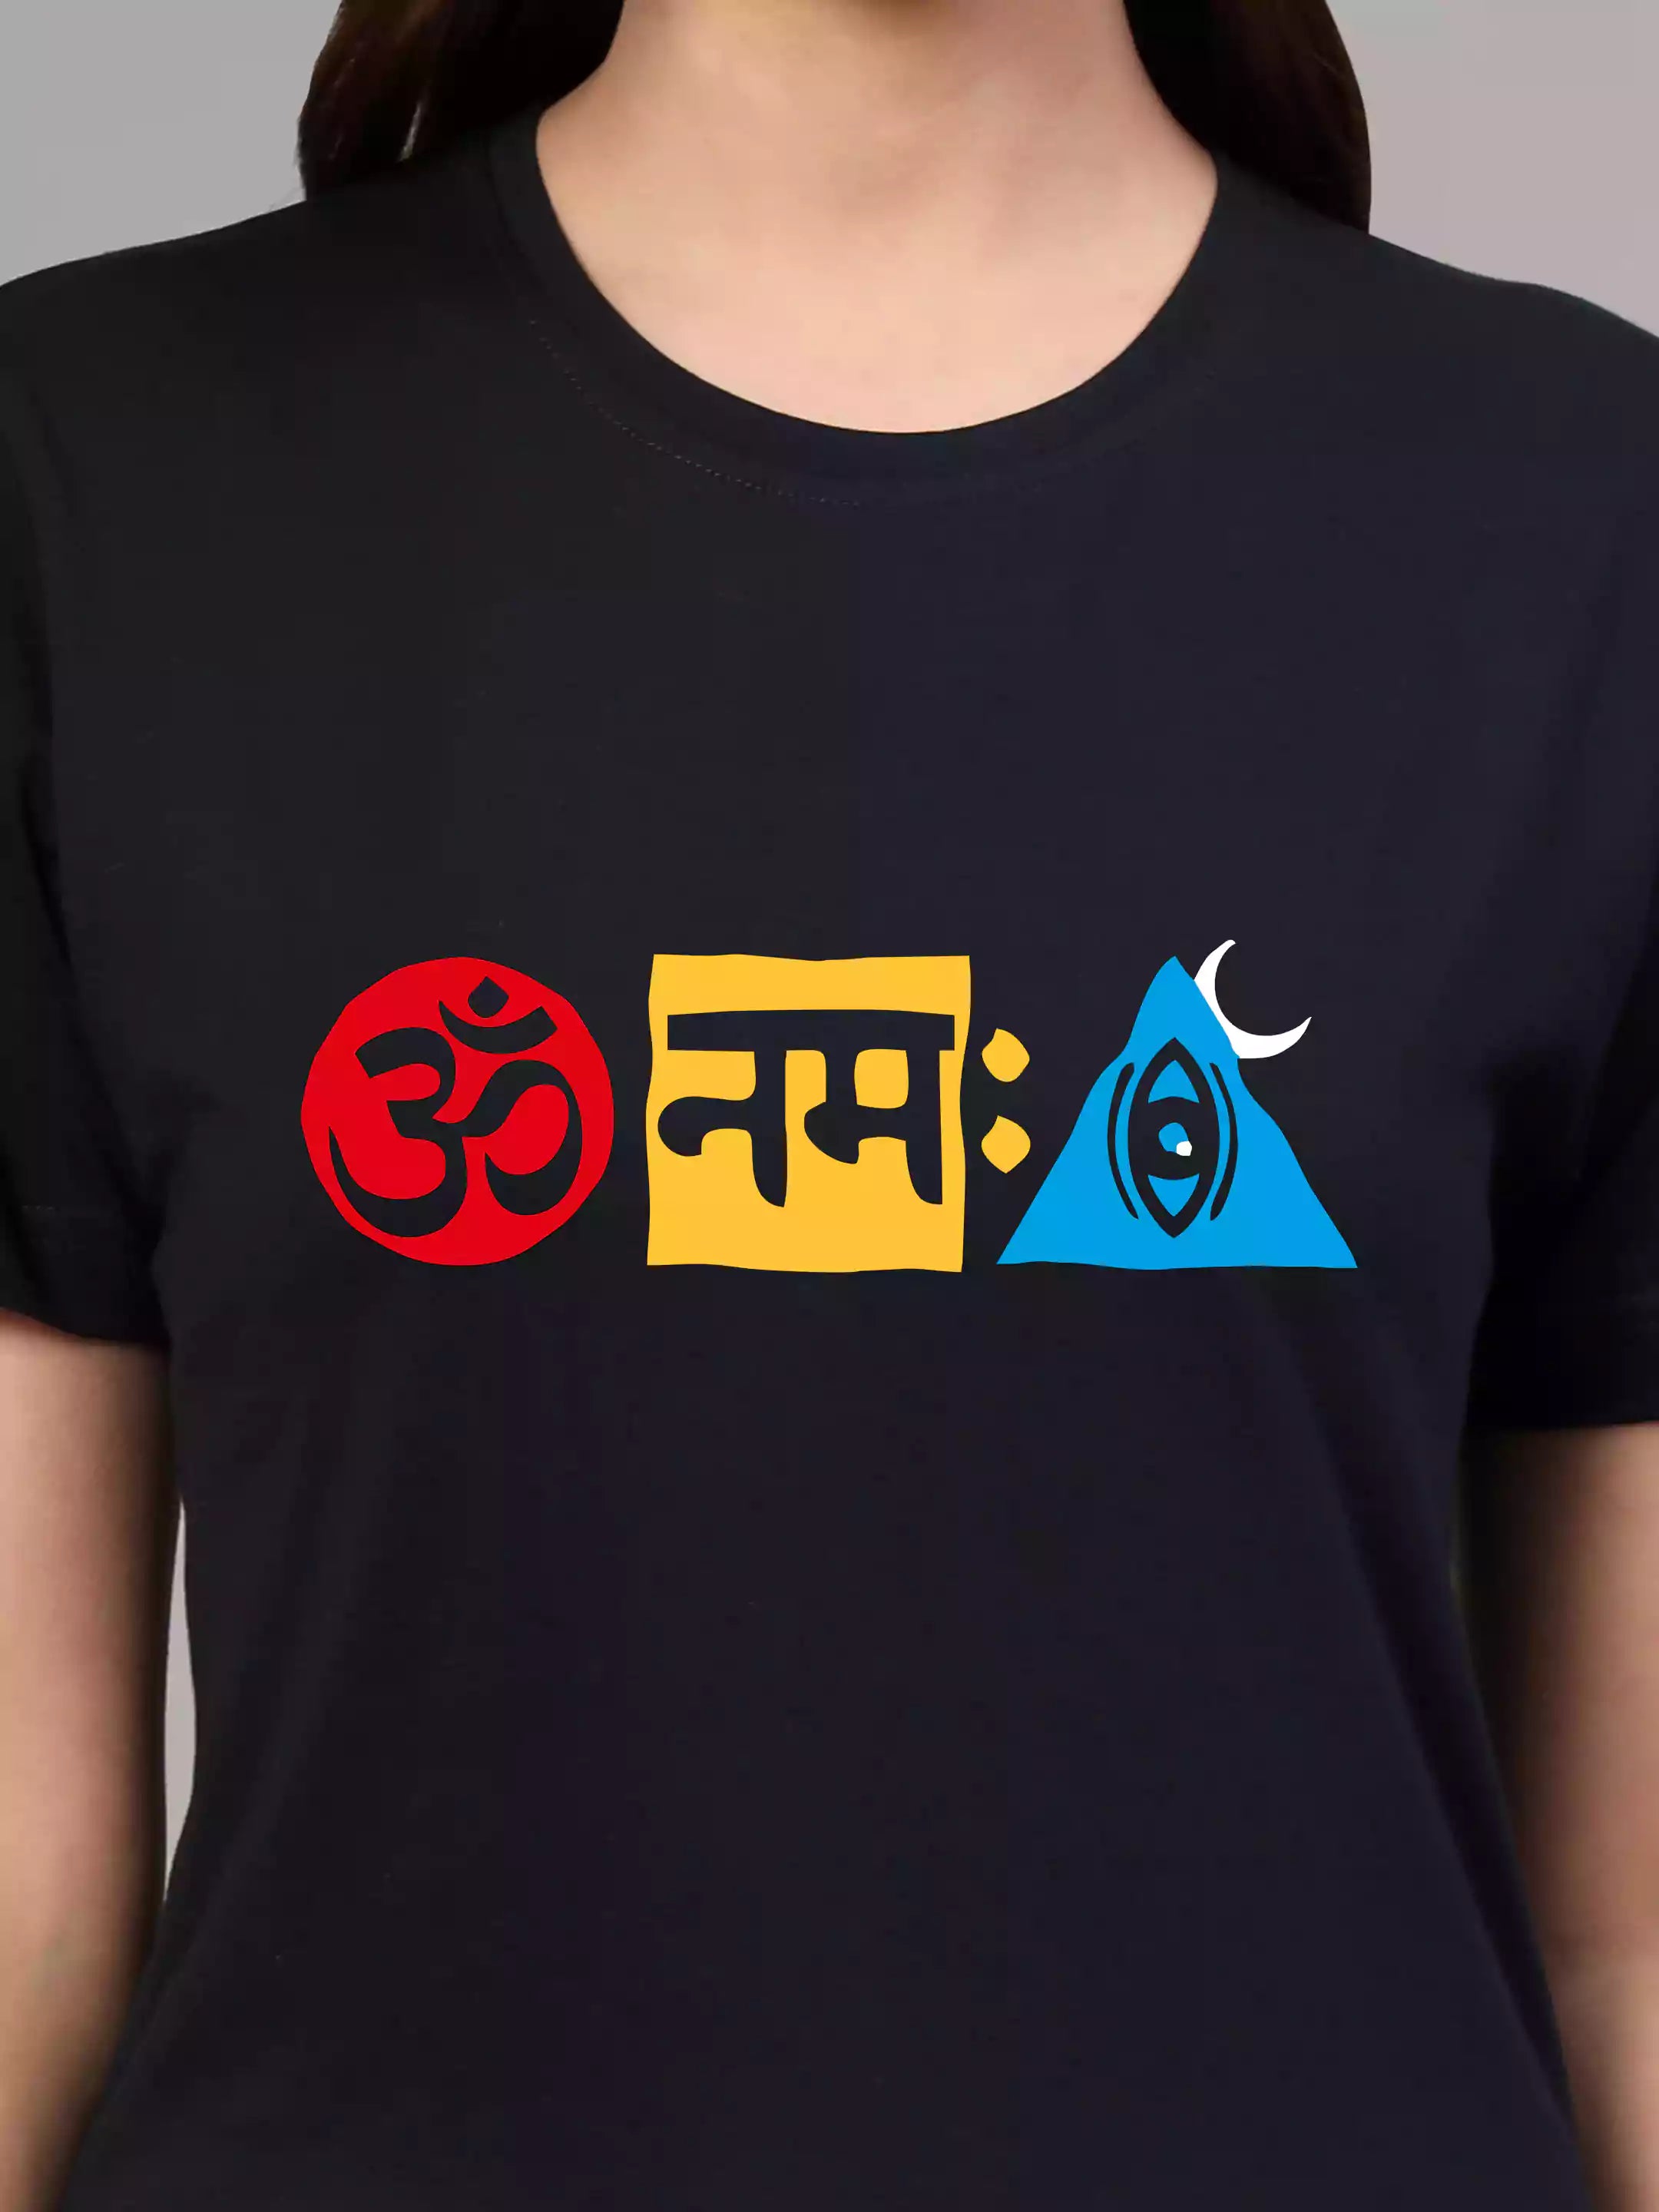 Om Namha Shivay - Sukhiaatma Unisex Graphic Printed Navy Blue T-shirt